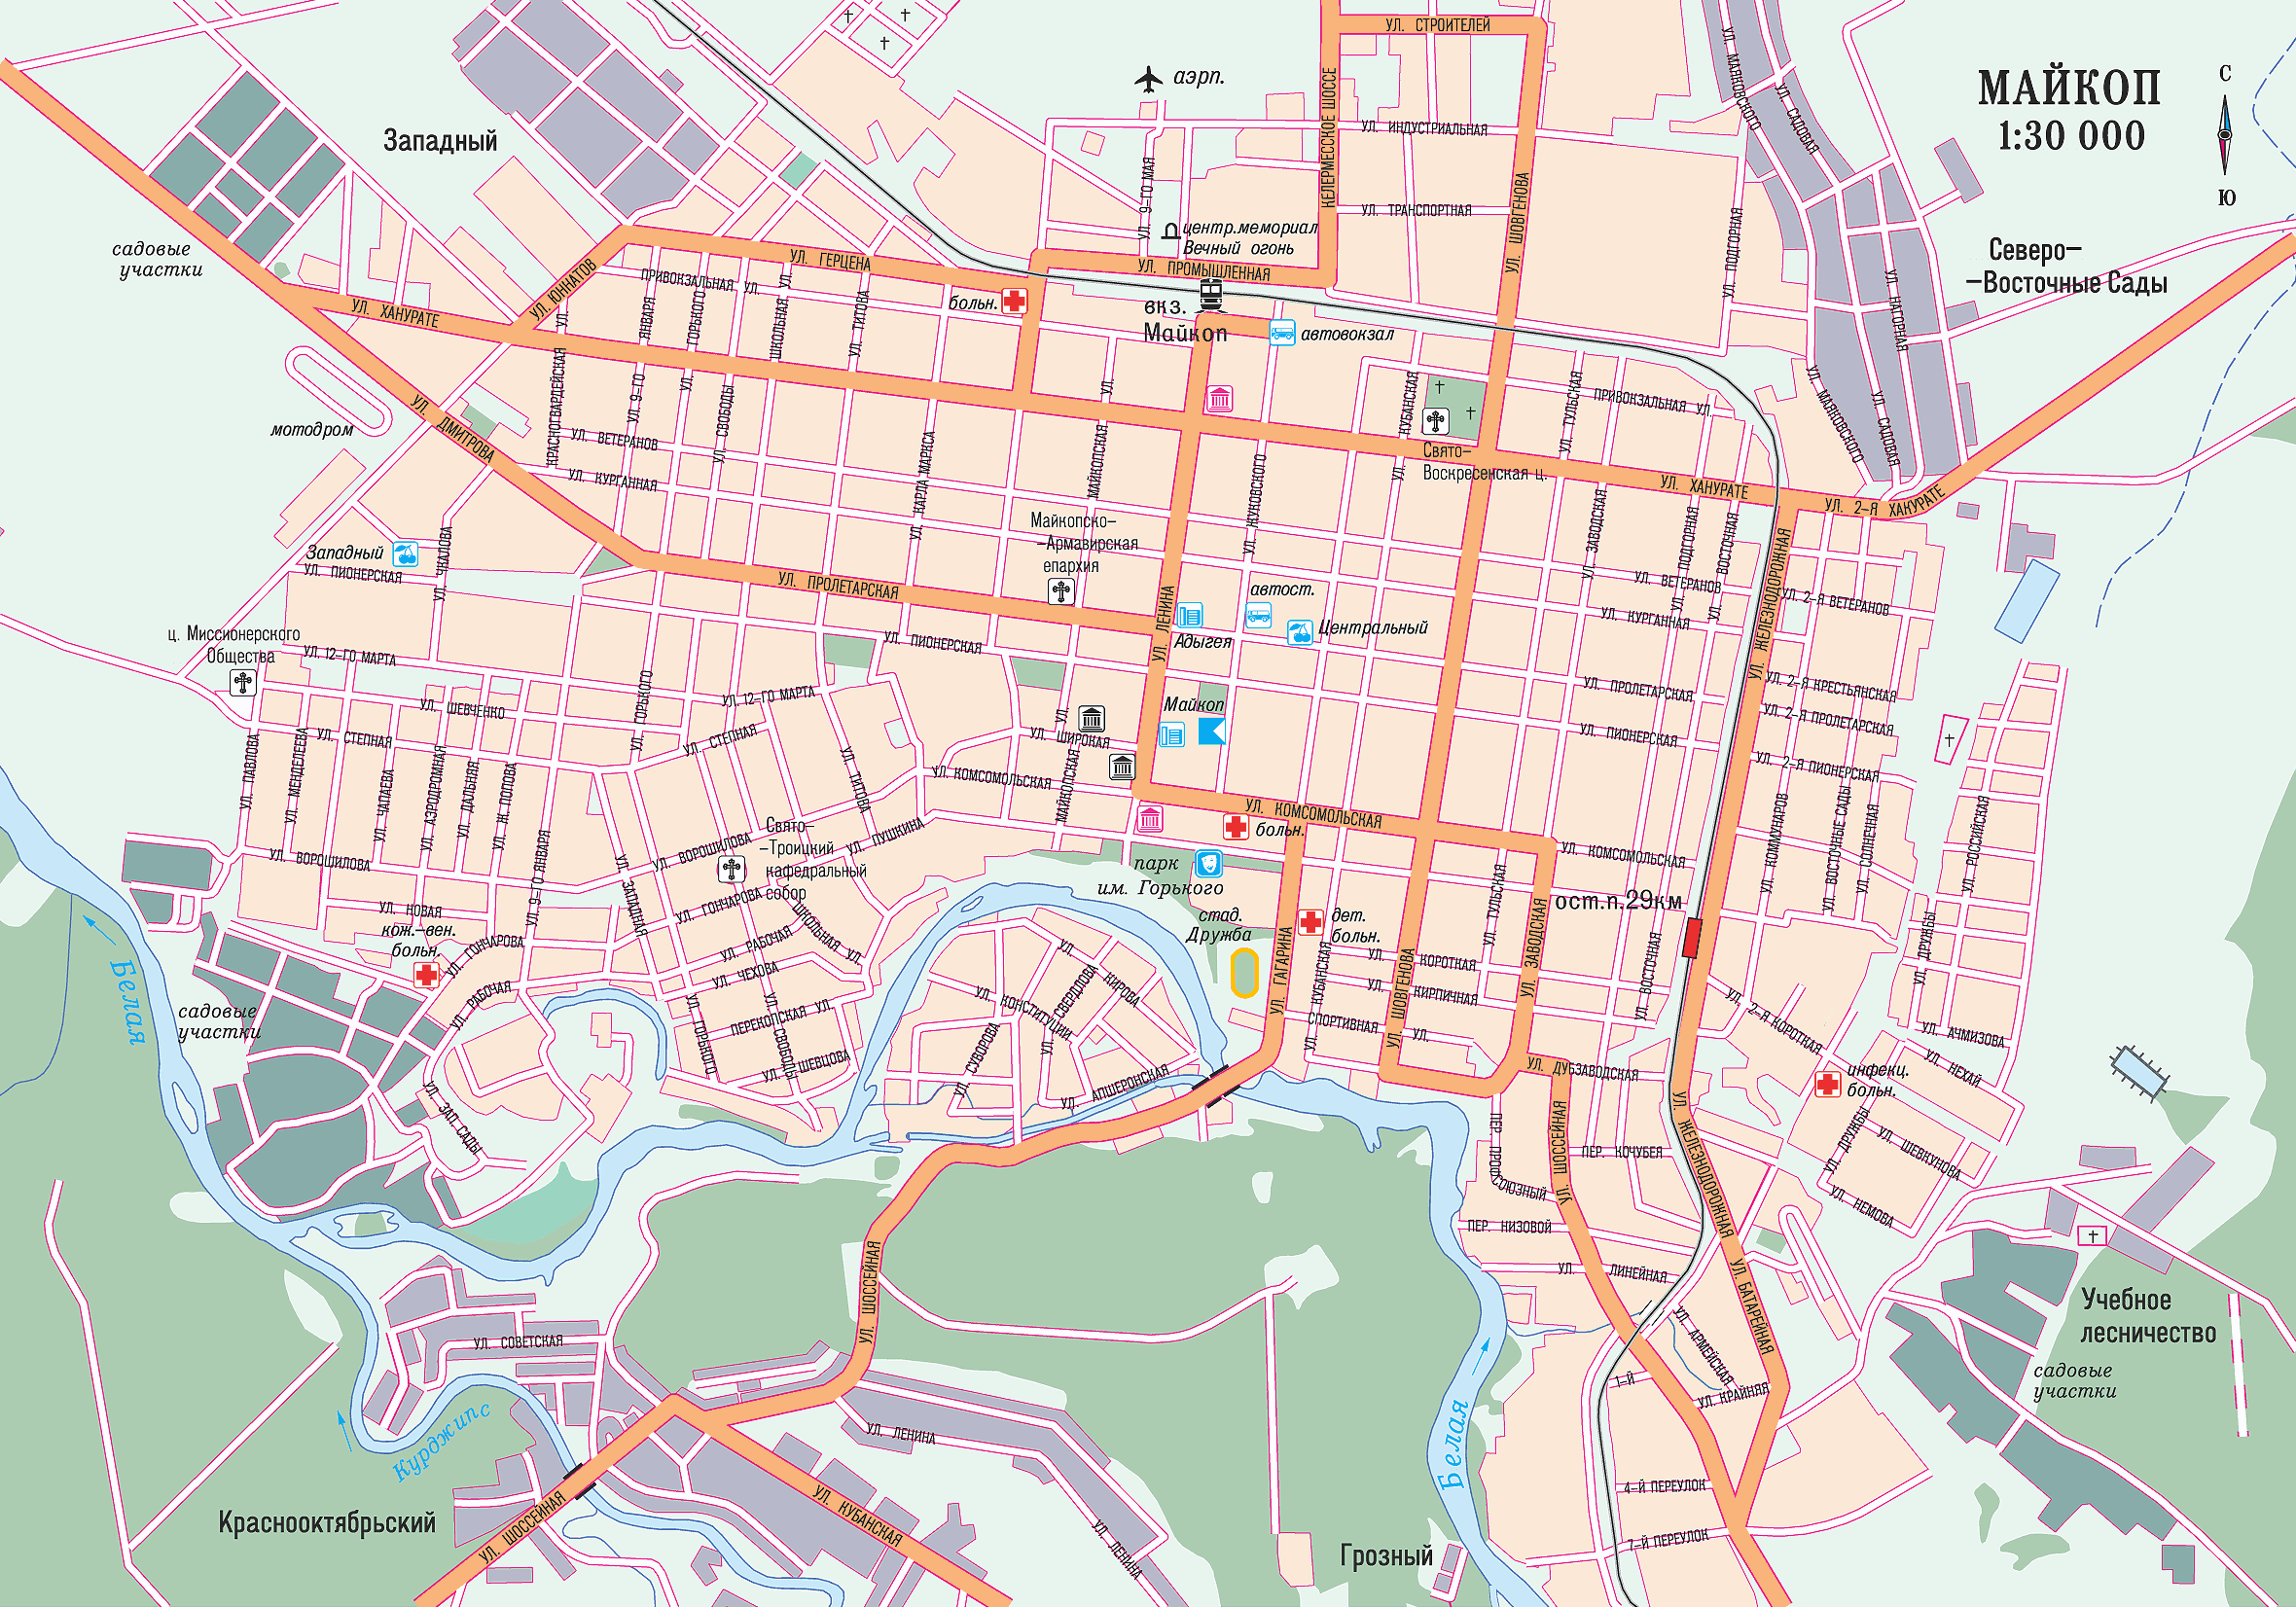 Map of Maykop